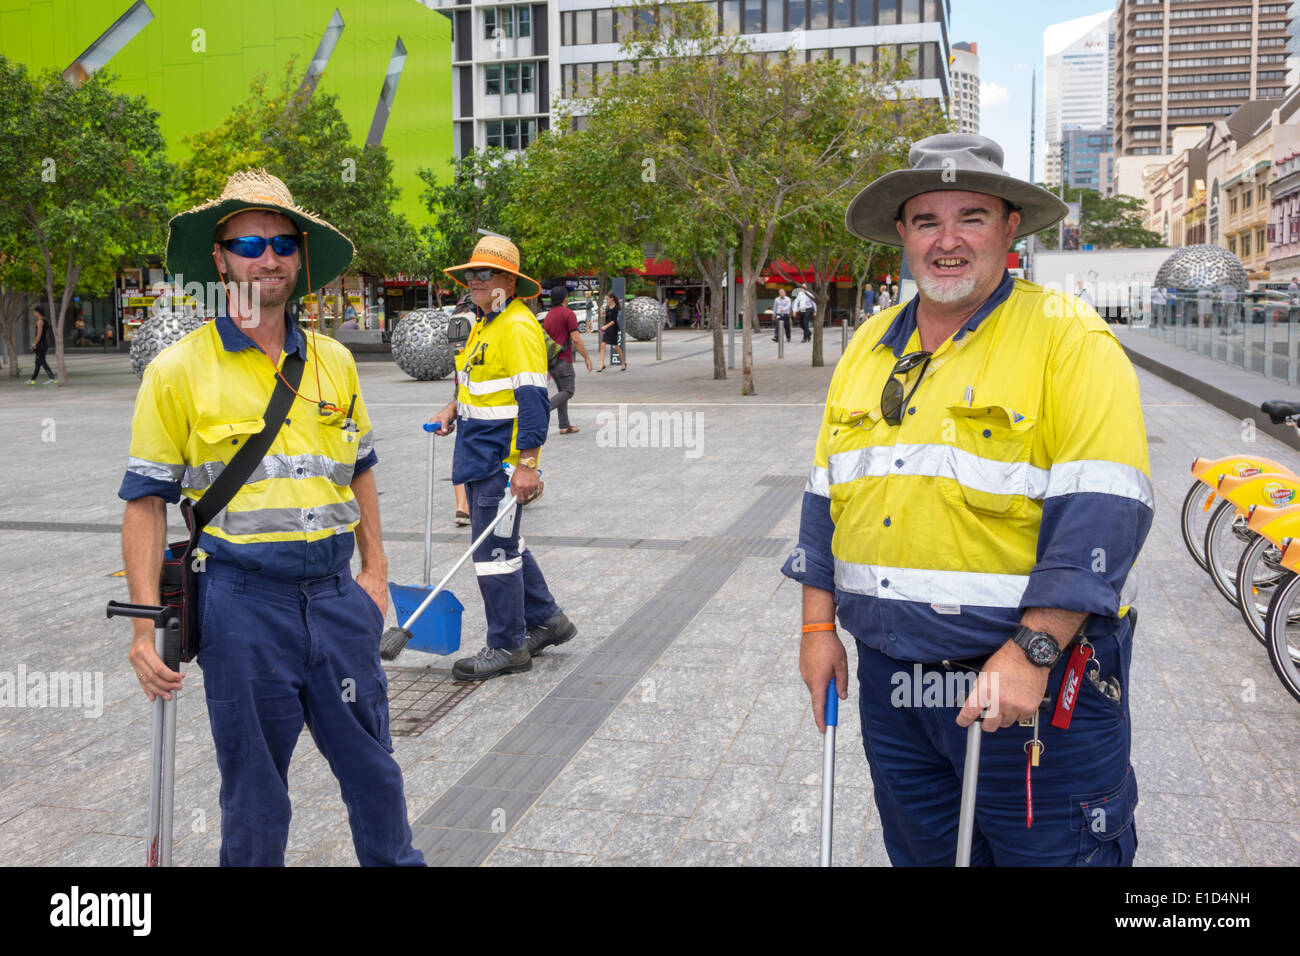 Brisbane Australia,Brisbane Square,trabajadores de la ciudad,hombres hombres,trabajadores empleados trabajadores trabajadores, limpieza de calles,uniforme,AU140313066 Foto de stock